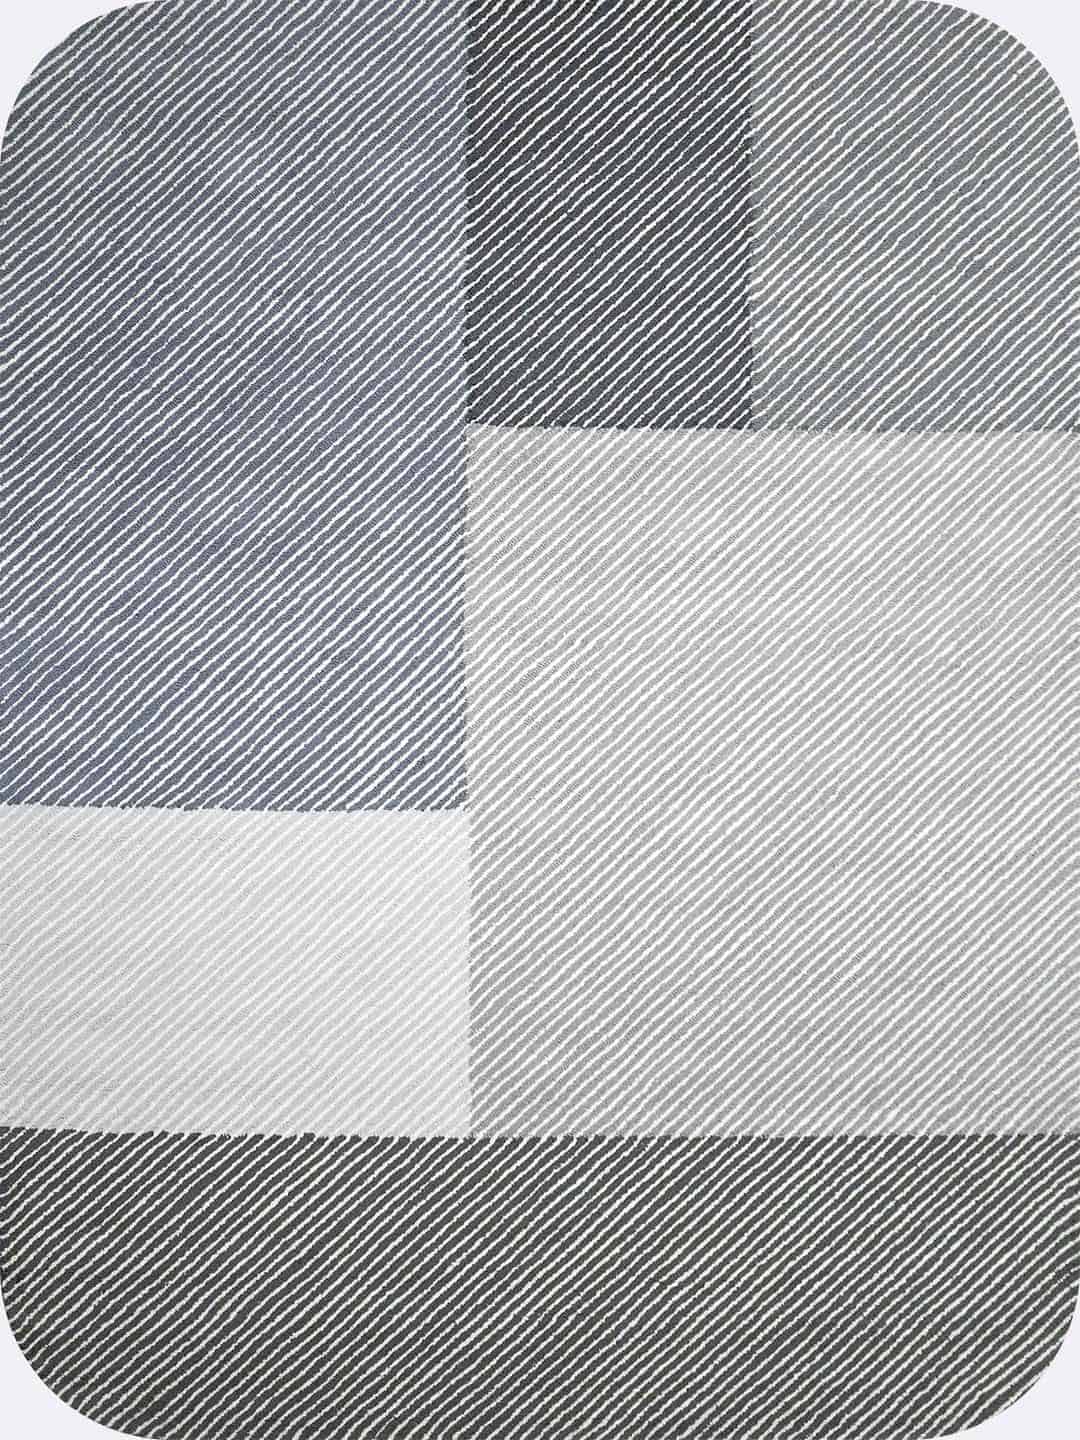 Pinstripe-Seal-grey-OH-stans-rug-centre-wool-loop pile